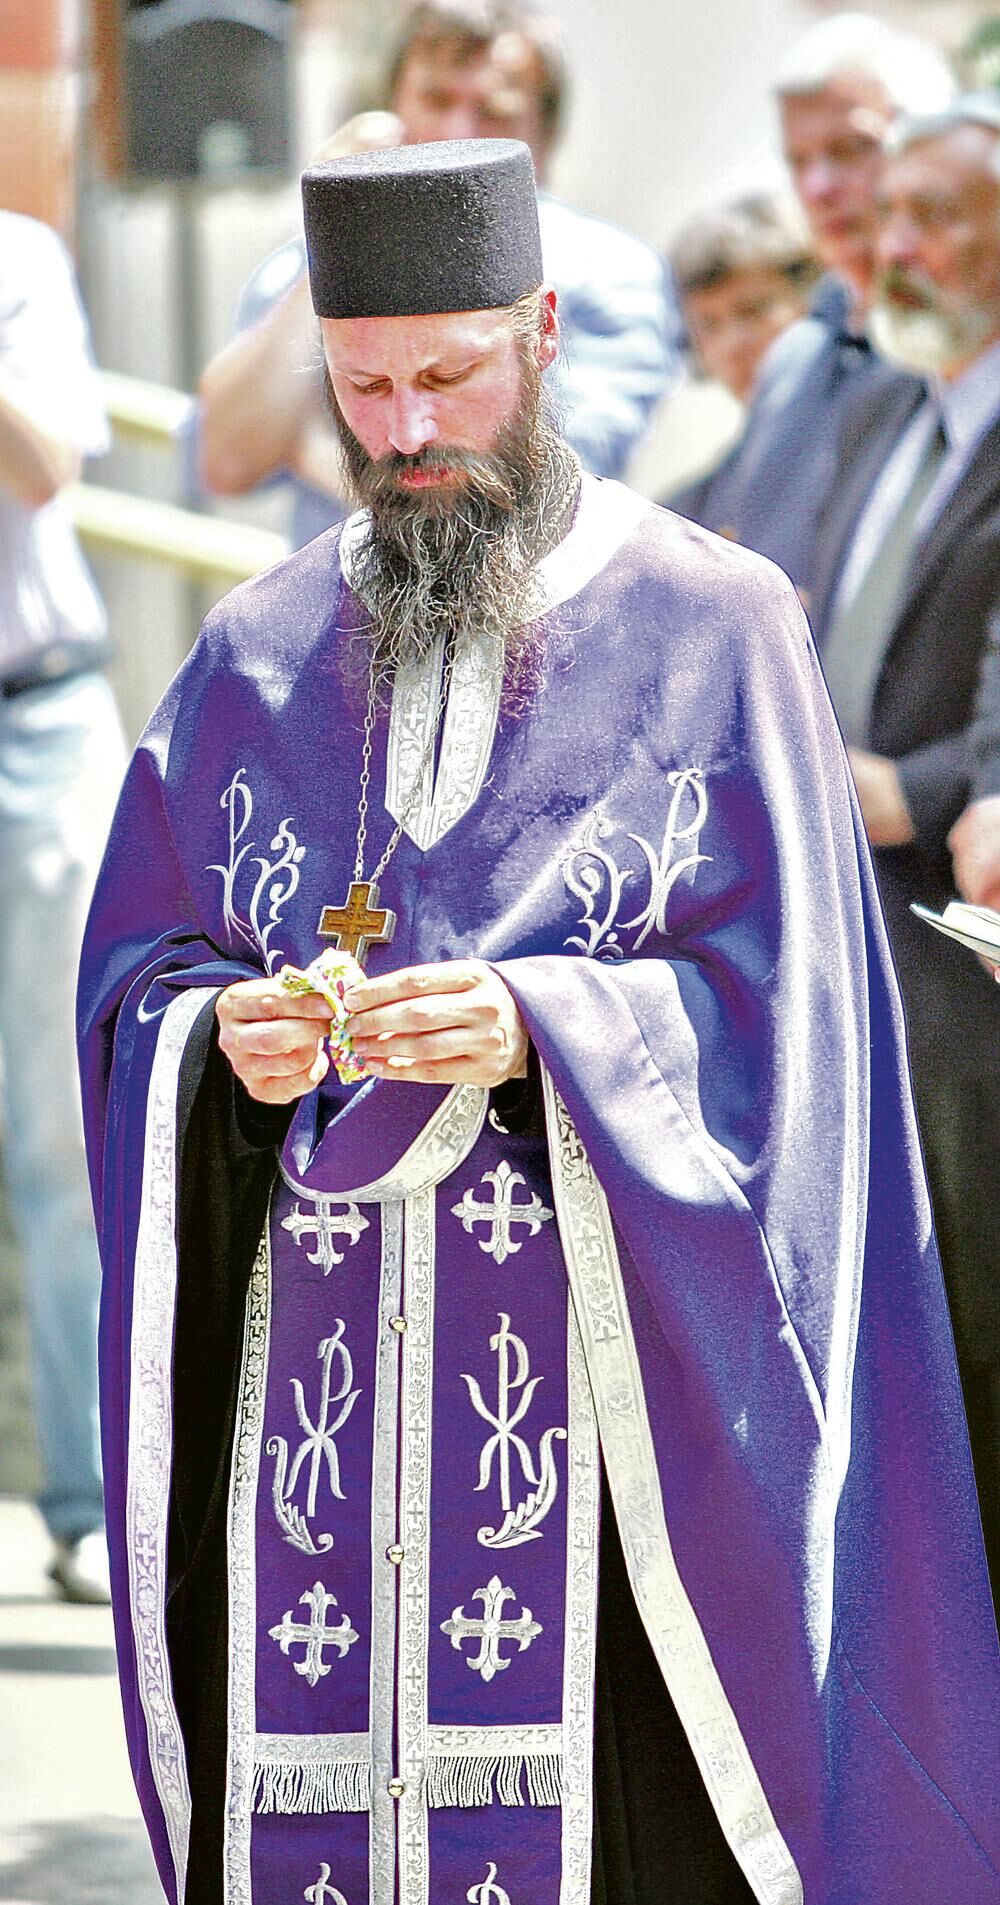 Lupulović se zamonašio 1996. godine, a 2013. postavljen je za igumana u manastiru Draganac